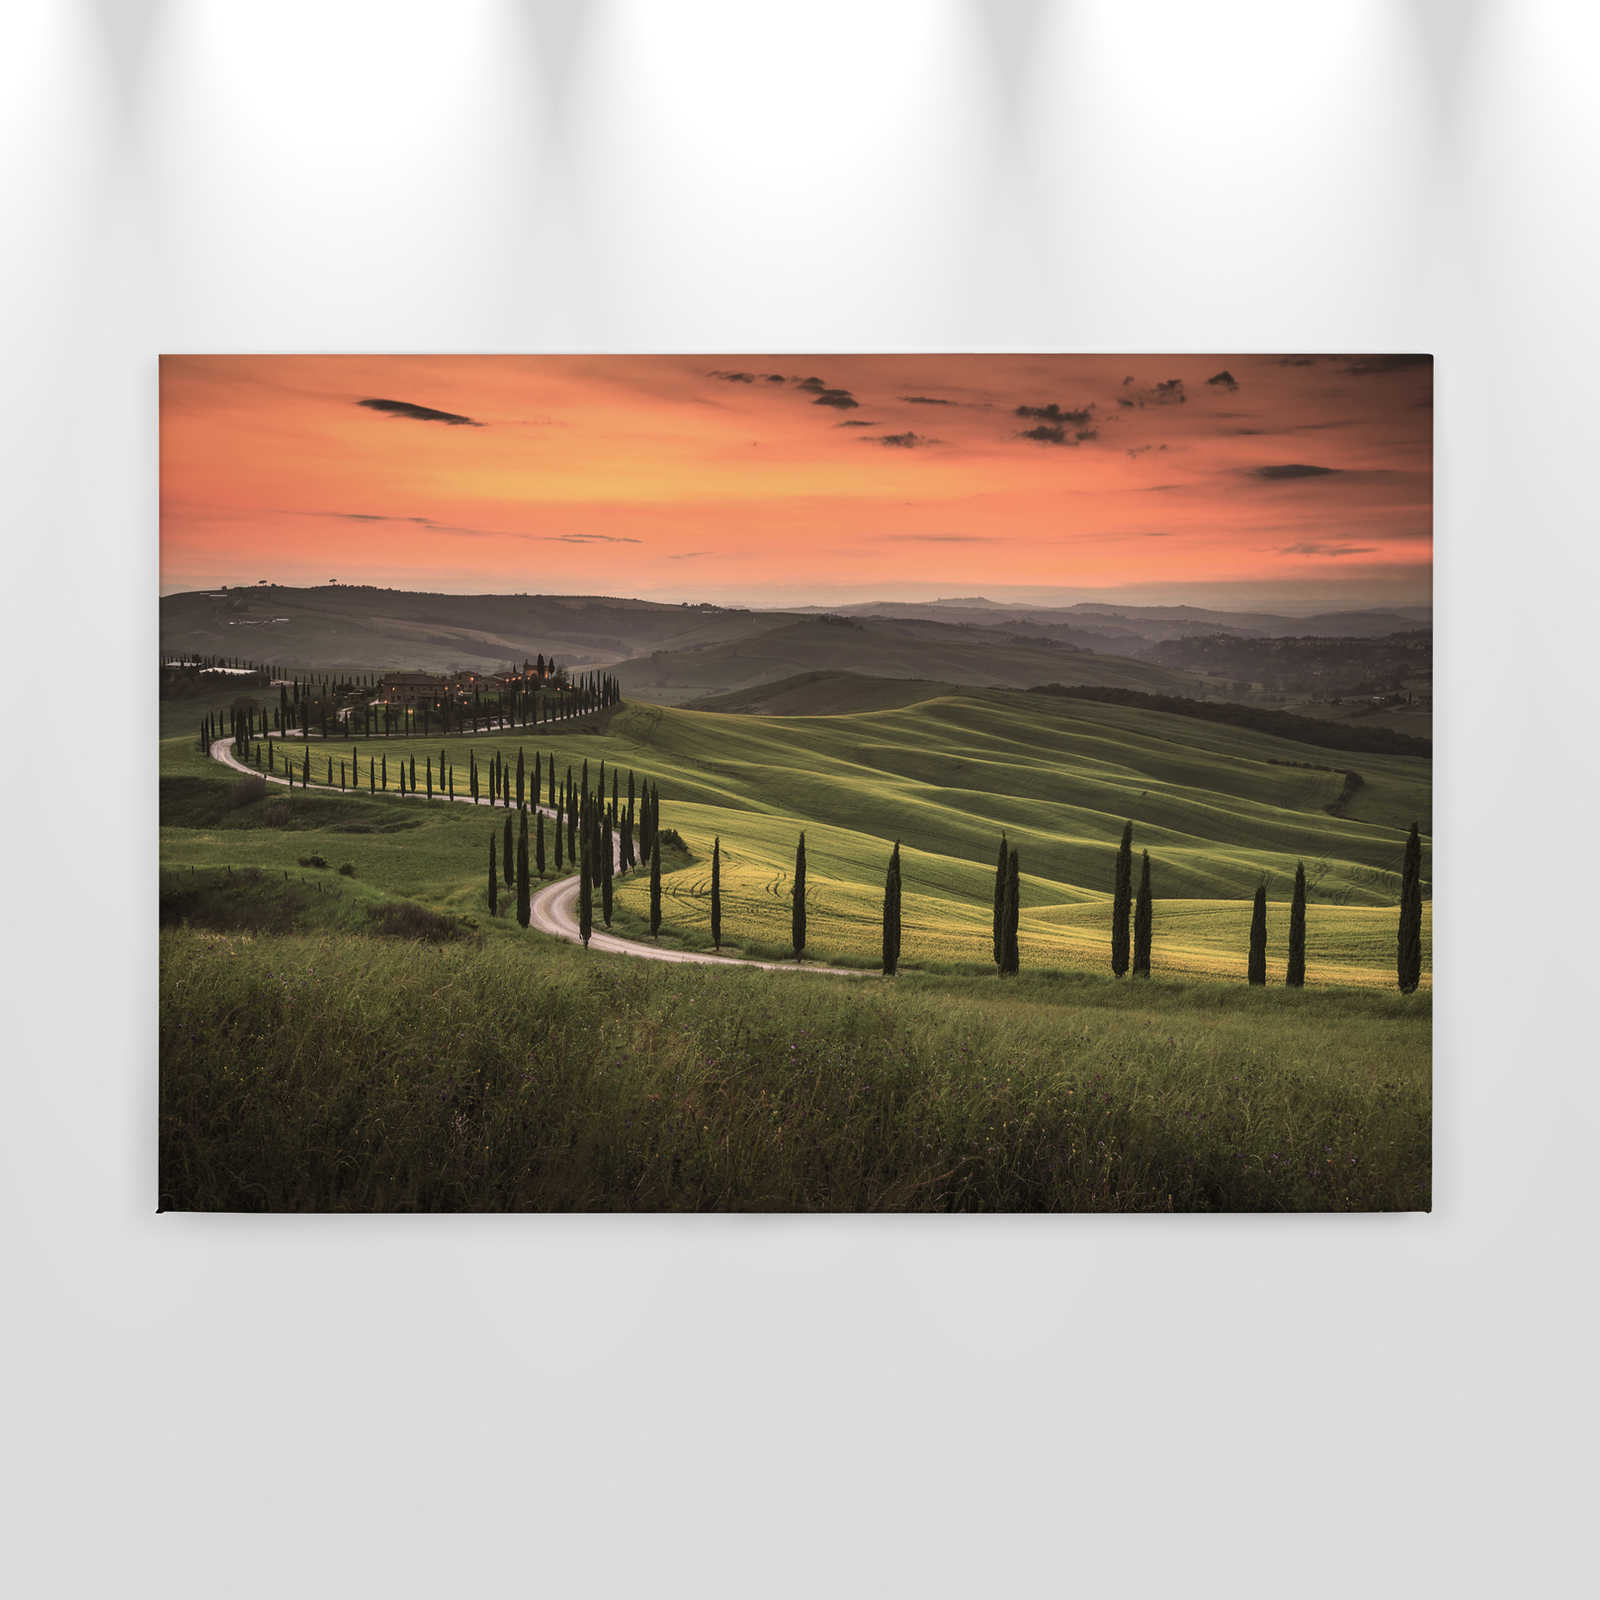             Toile avec paysage toscan au crépuscule - 0,90 m x 0,60 m
        